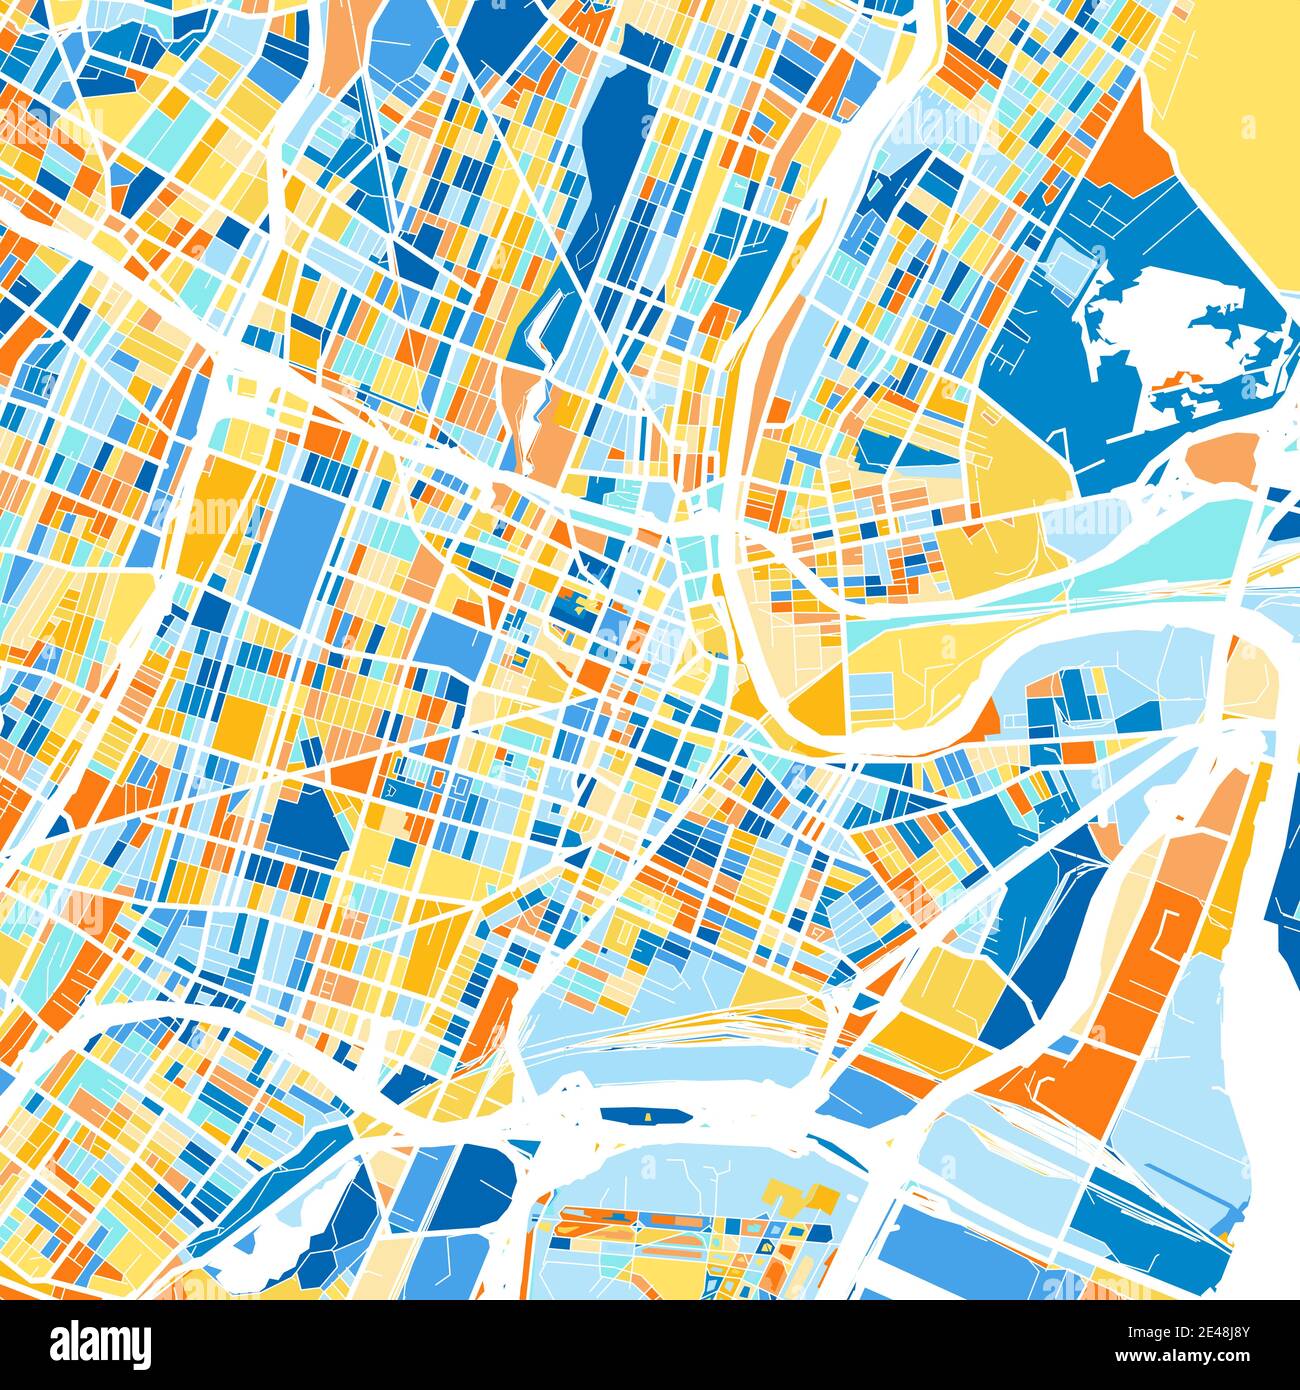 Farbkunstkarte von Newark, New Jersey, UnitedStates in Blau und Orangen. Die Farbabstufungen in der Newark-Karte folgen einem zufälligen Muster. Stock Vektor